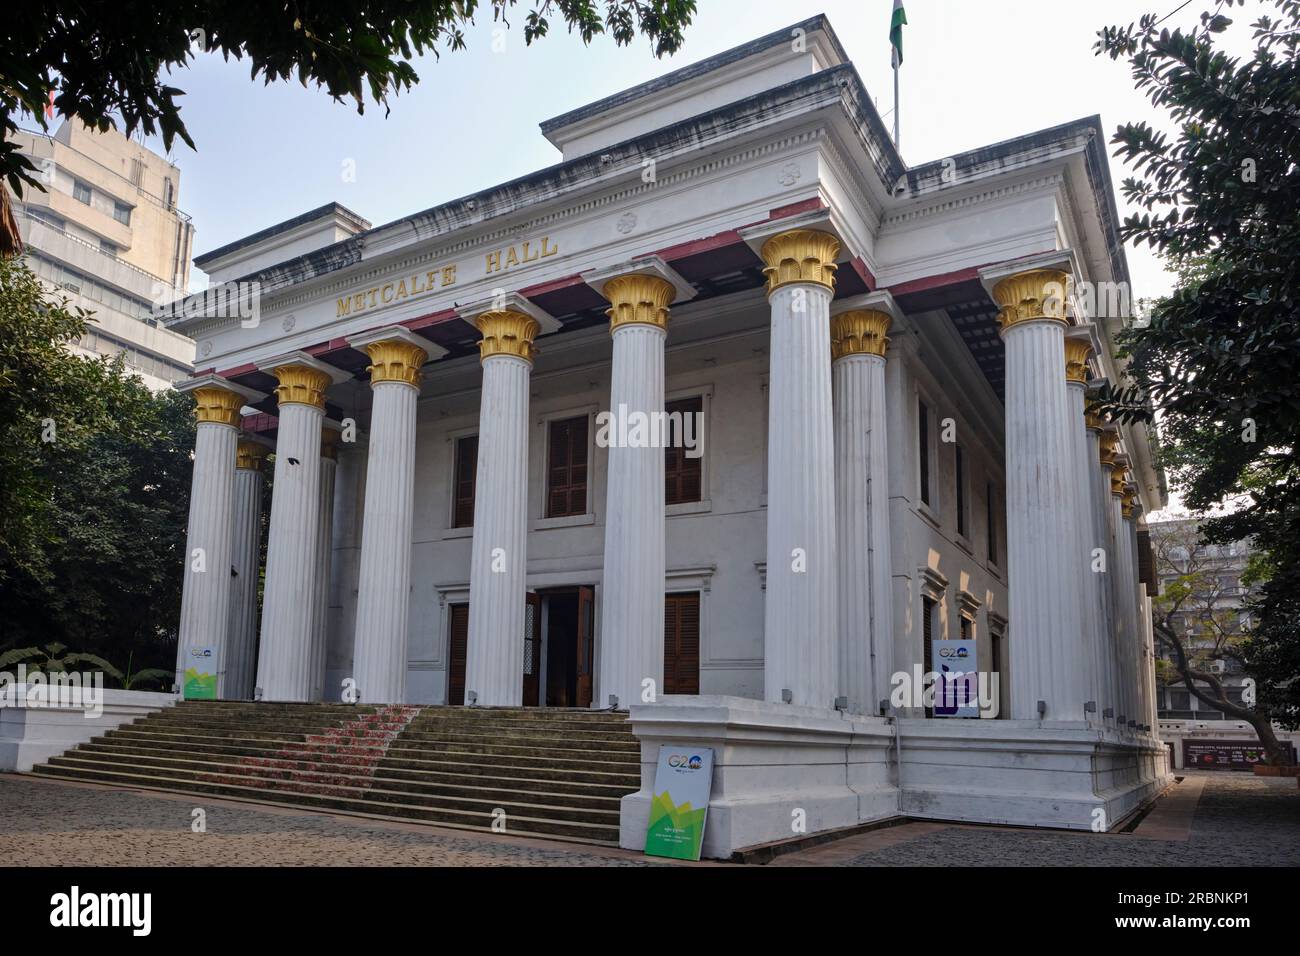 India, Bengala Occidentale, Calcutta, Metcalfe Hall è un edificio storico della città di Calcutta. Costruito nel 1844, nell'antico stile greco Foto Stock